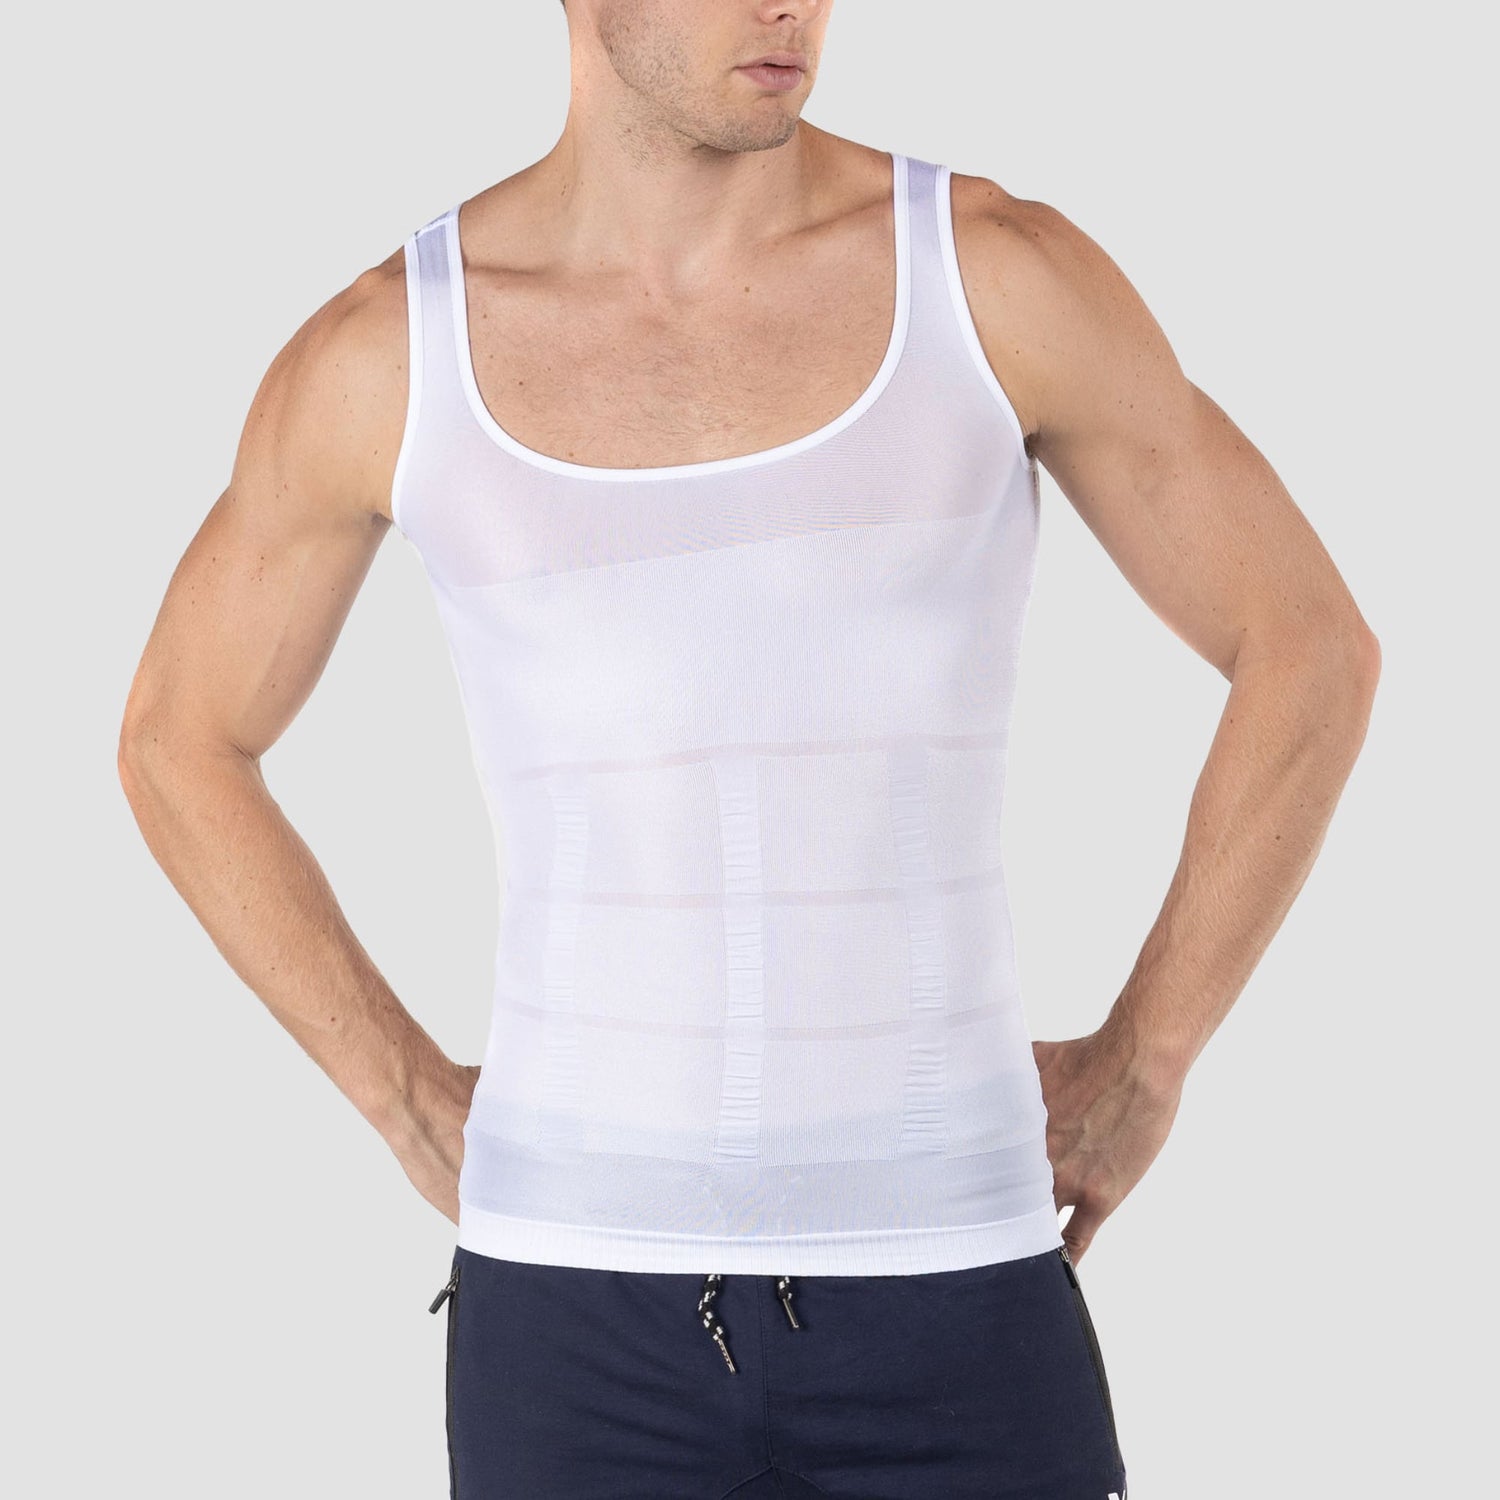 Plain Slim and Lift For Men, Waist Size: Free, Sleeveless Vest